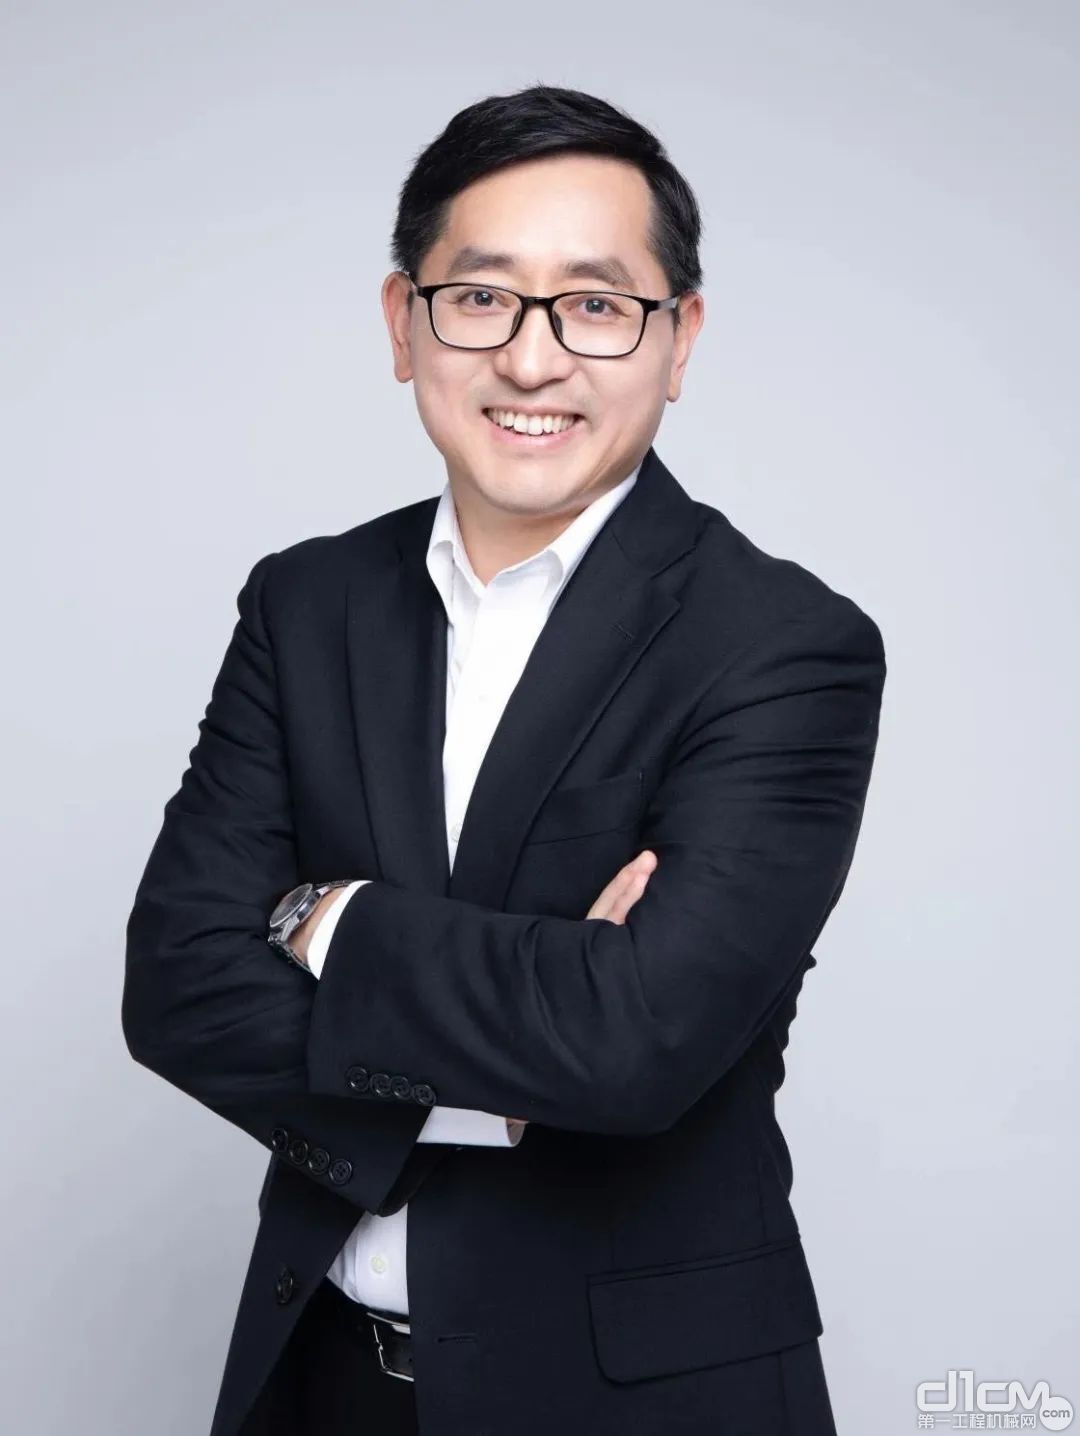 吴小路先生（Lewis Wu）正式接任捷尔杰有限公司亚洲区商务总监